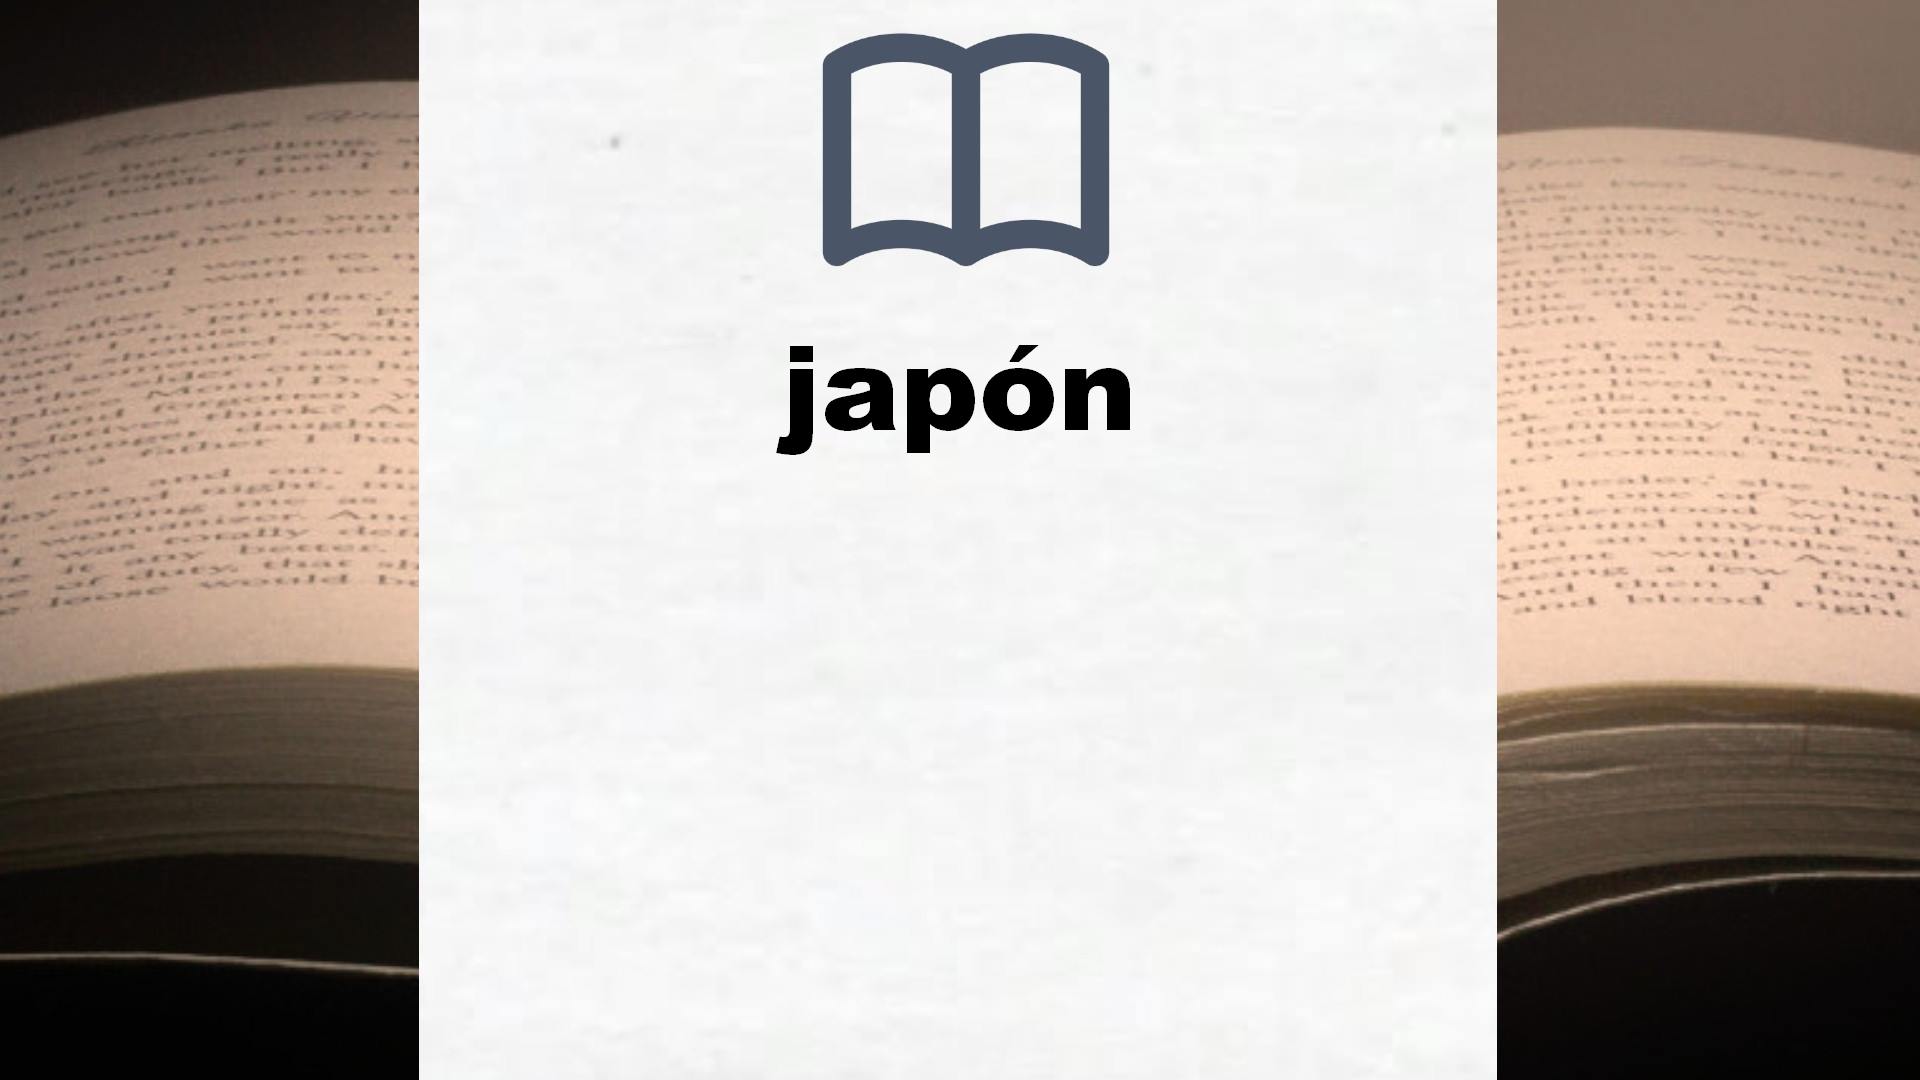 Libros sobre japón